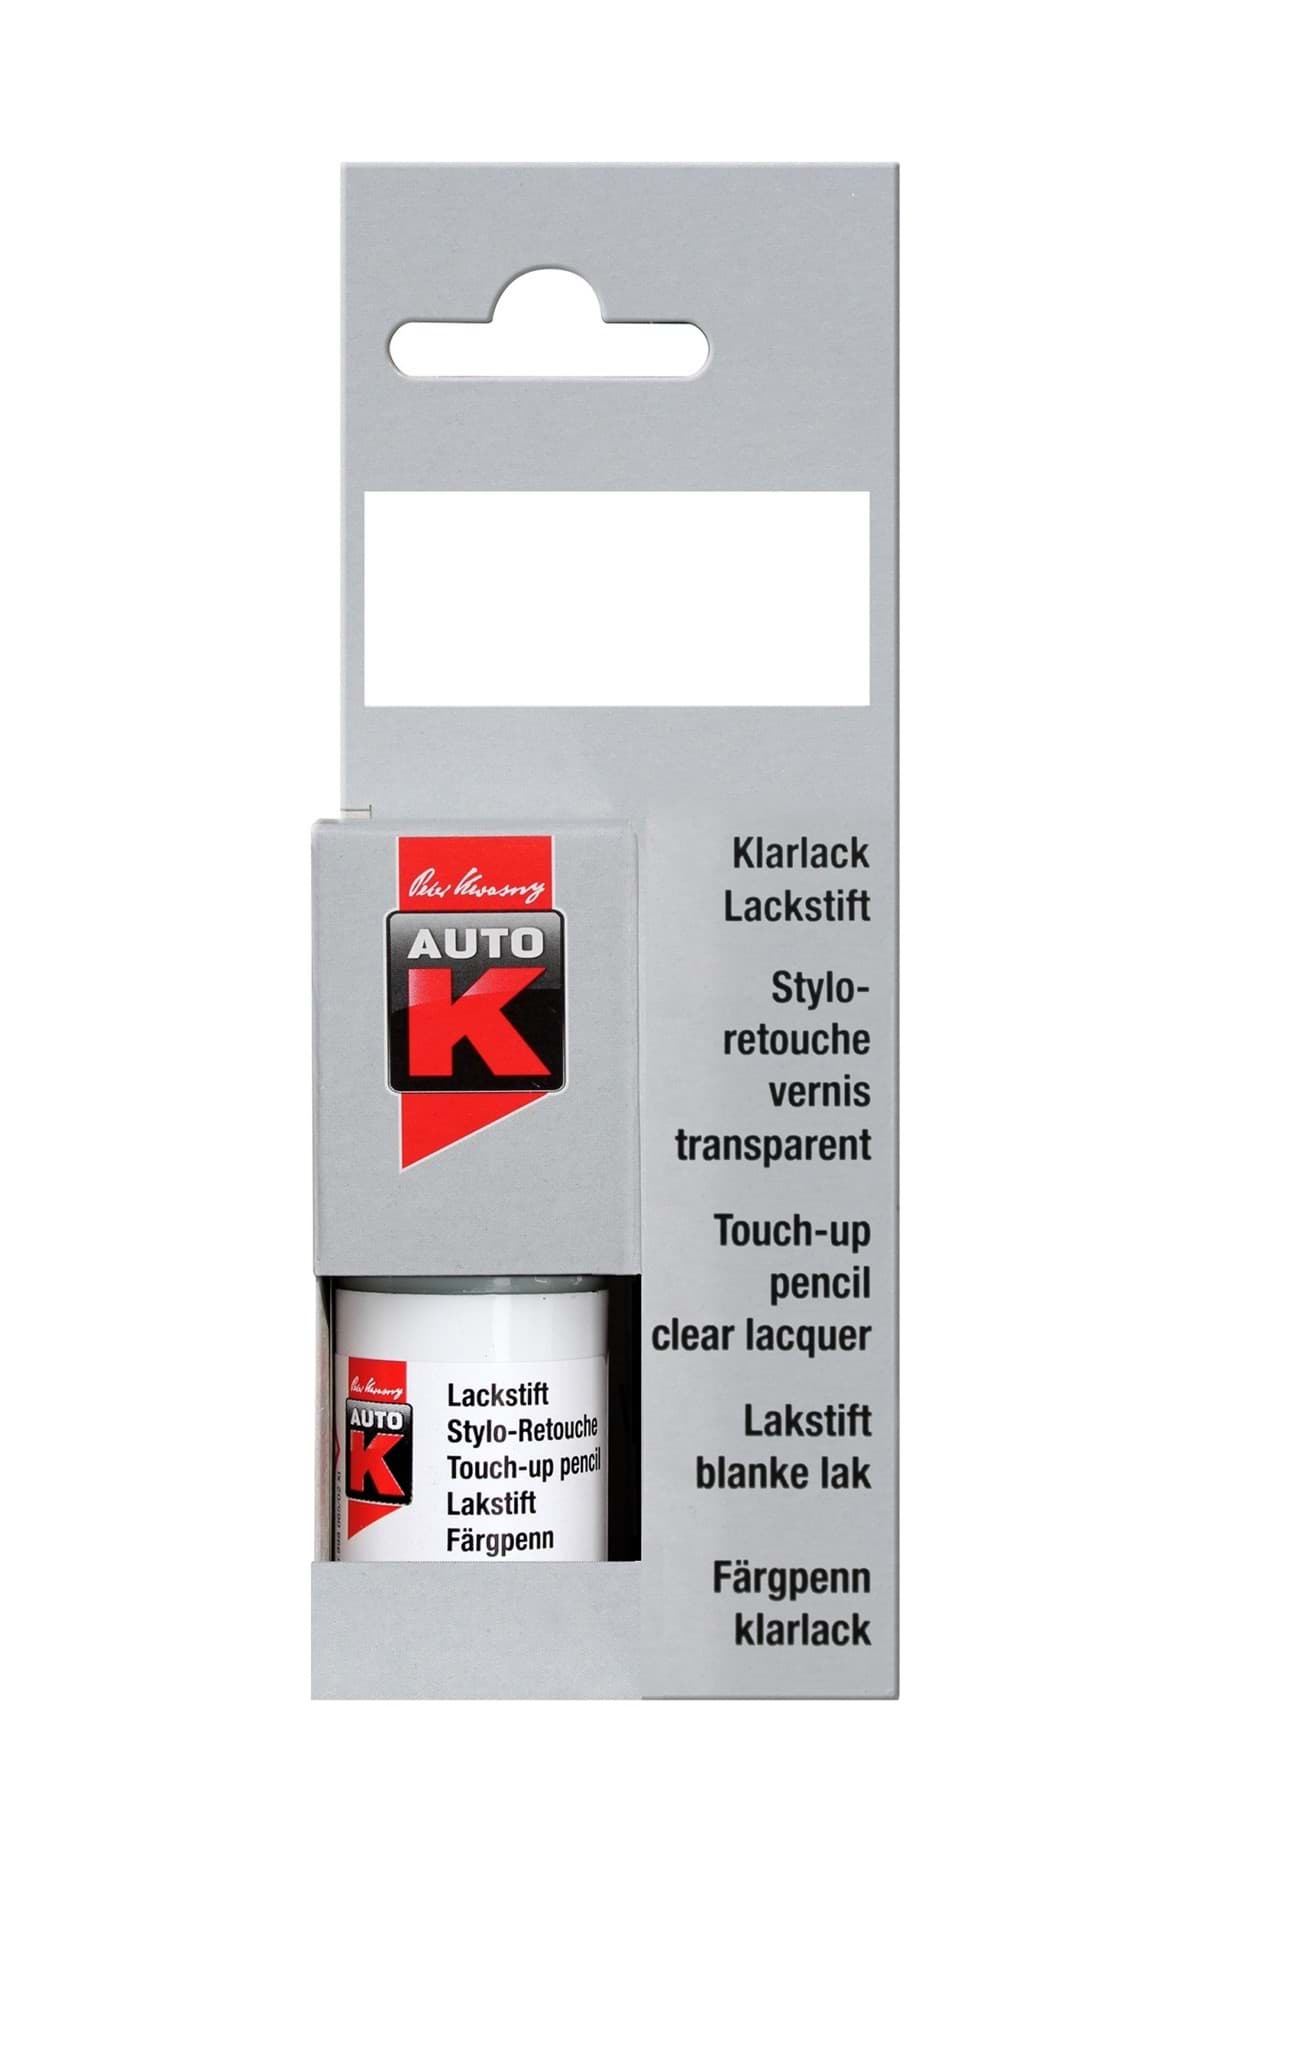 Afbeelding van AutoK Lackstift, Tupflack, Korrosionsschutz-Grundierung rot 433058